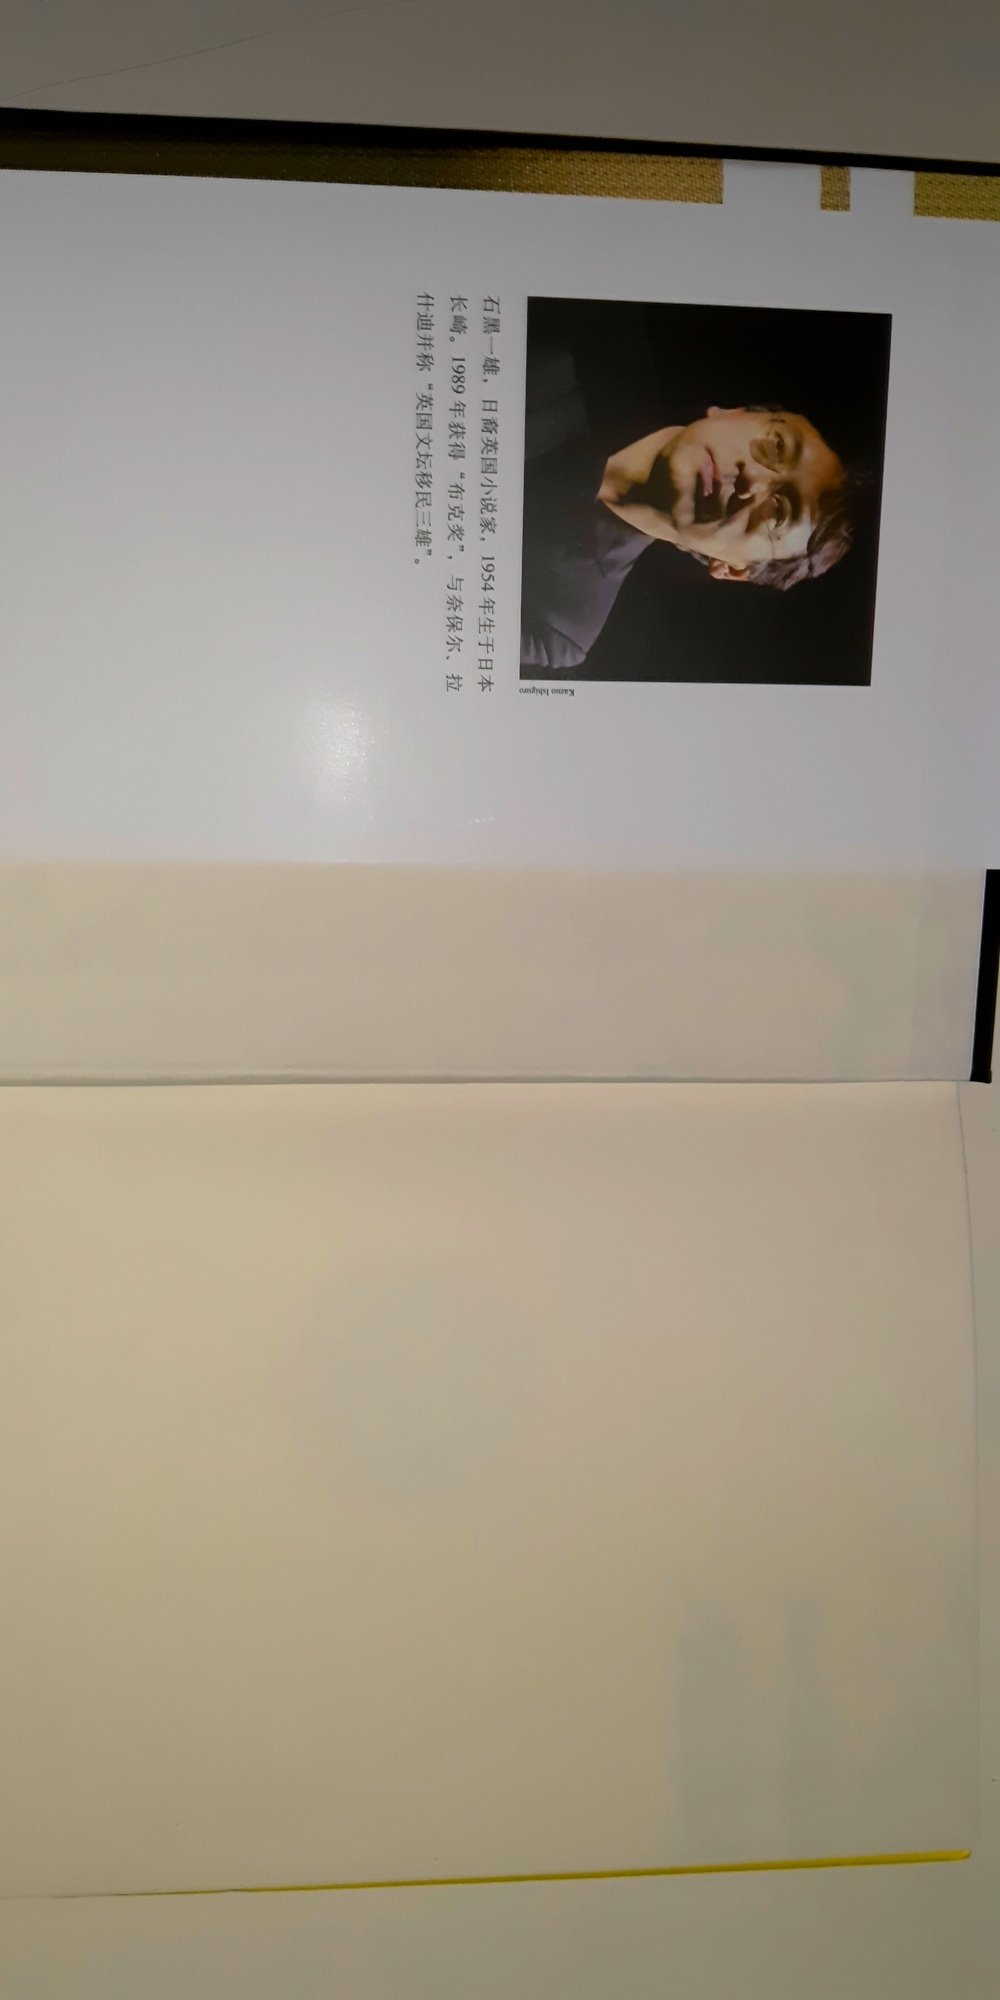 上海译文出版社出版的石黑一雄的这套文集，从装帧设计和印刷来说都很精良，遇上满减活动可以整套买了来看，硬皮精装，挺好。不同的是，所用纸材。以这本来说，纸页发暗、偏薄，下一页文字笔画清晰可见。所以，三星。